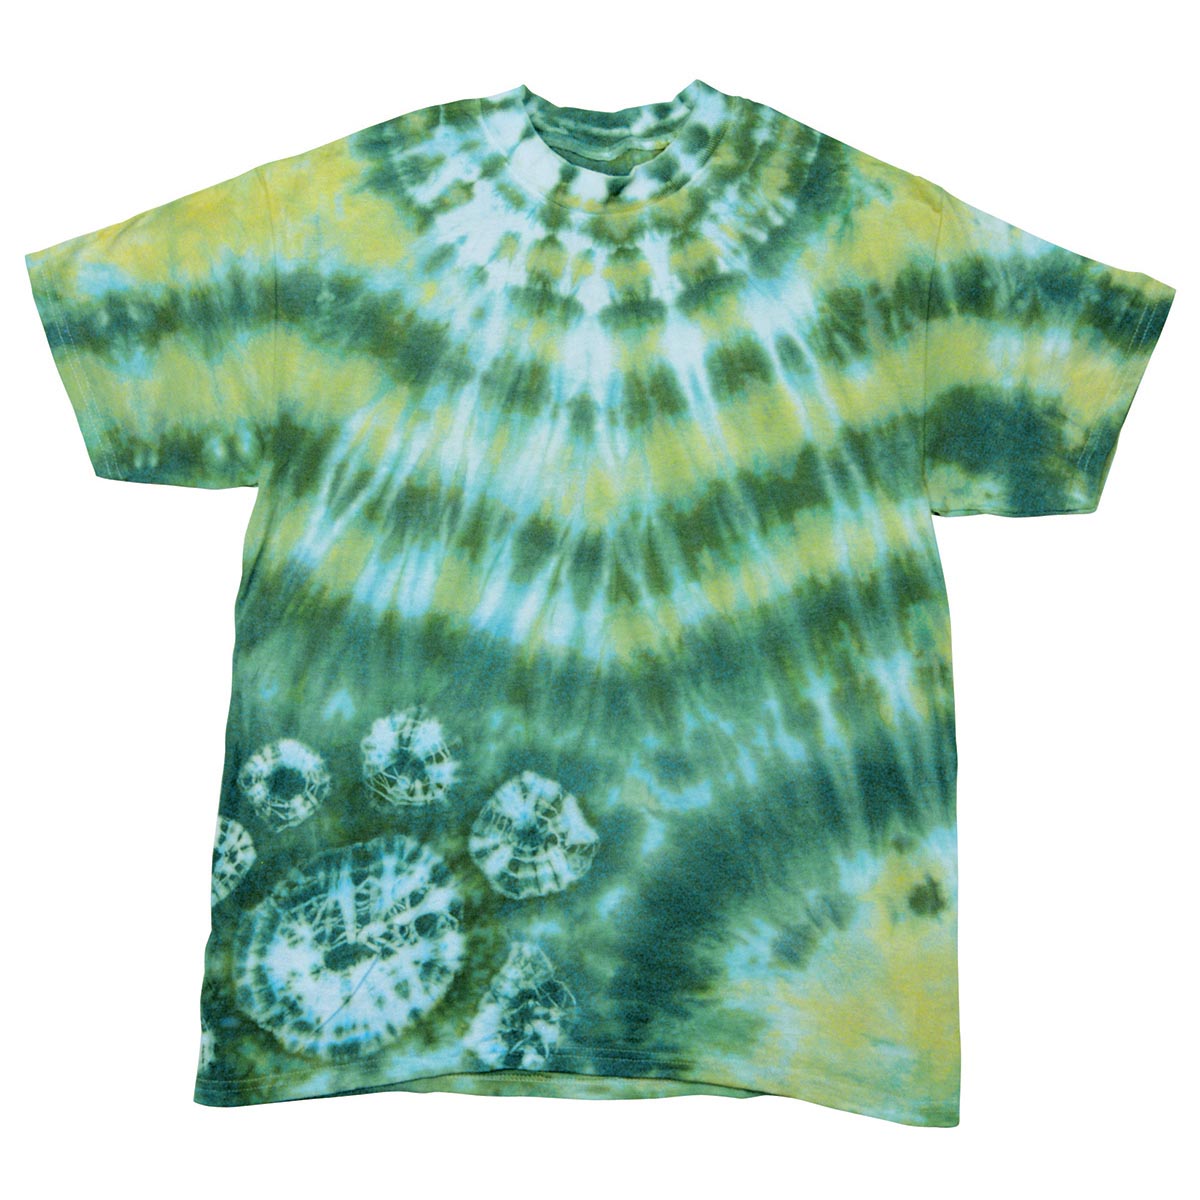 Jacquard-Batik-Set für T-Shirts - Emerald Jewel Tone